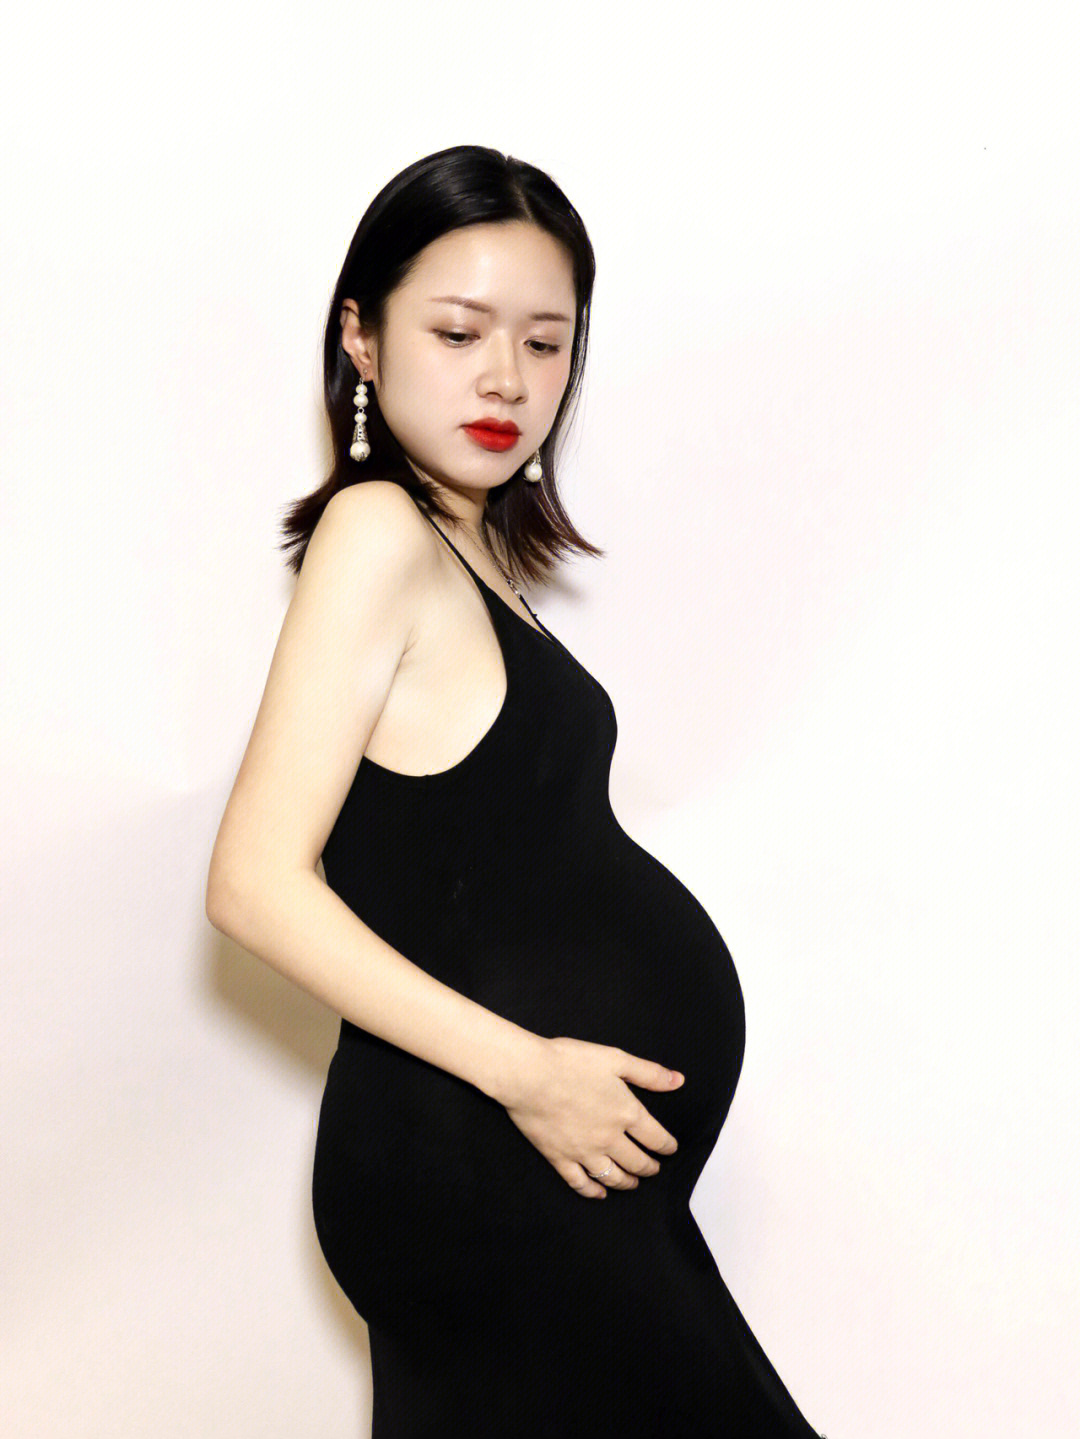 自拍孕妇照片大肚子图片